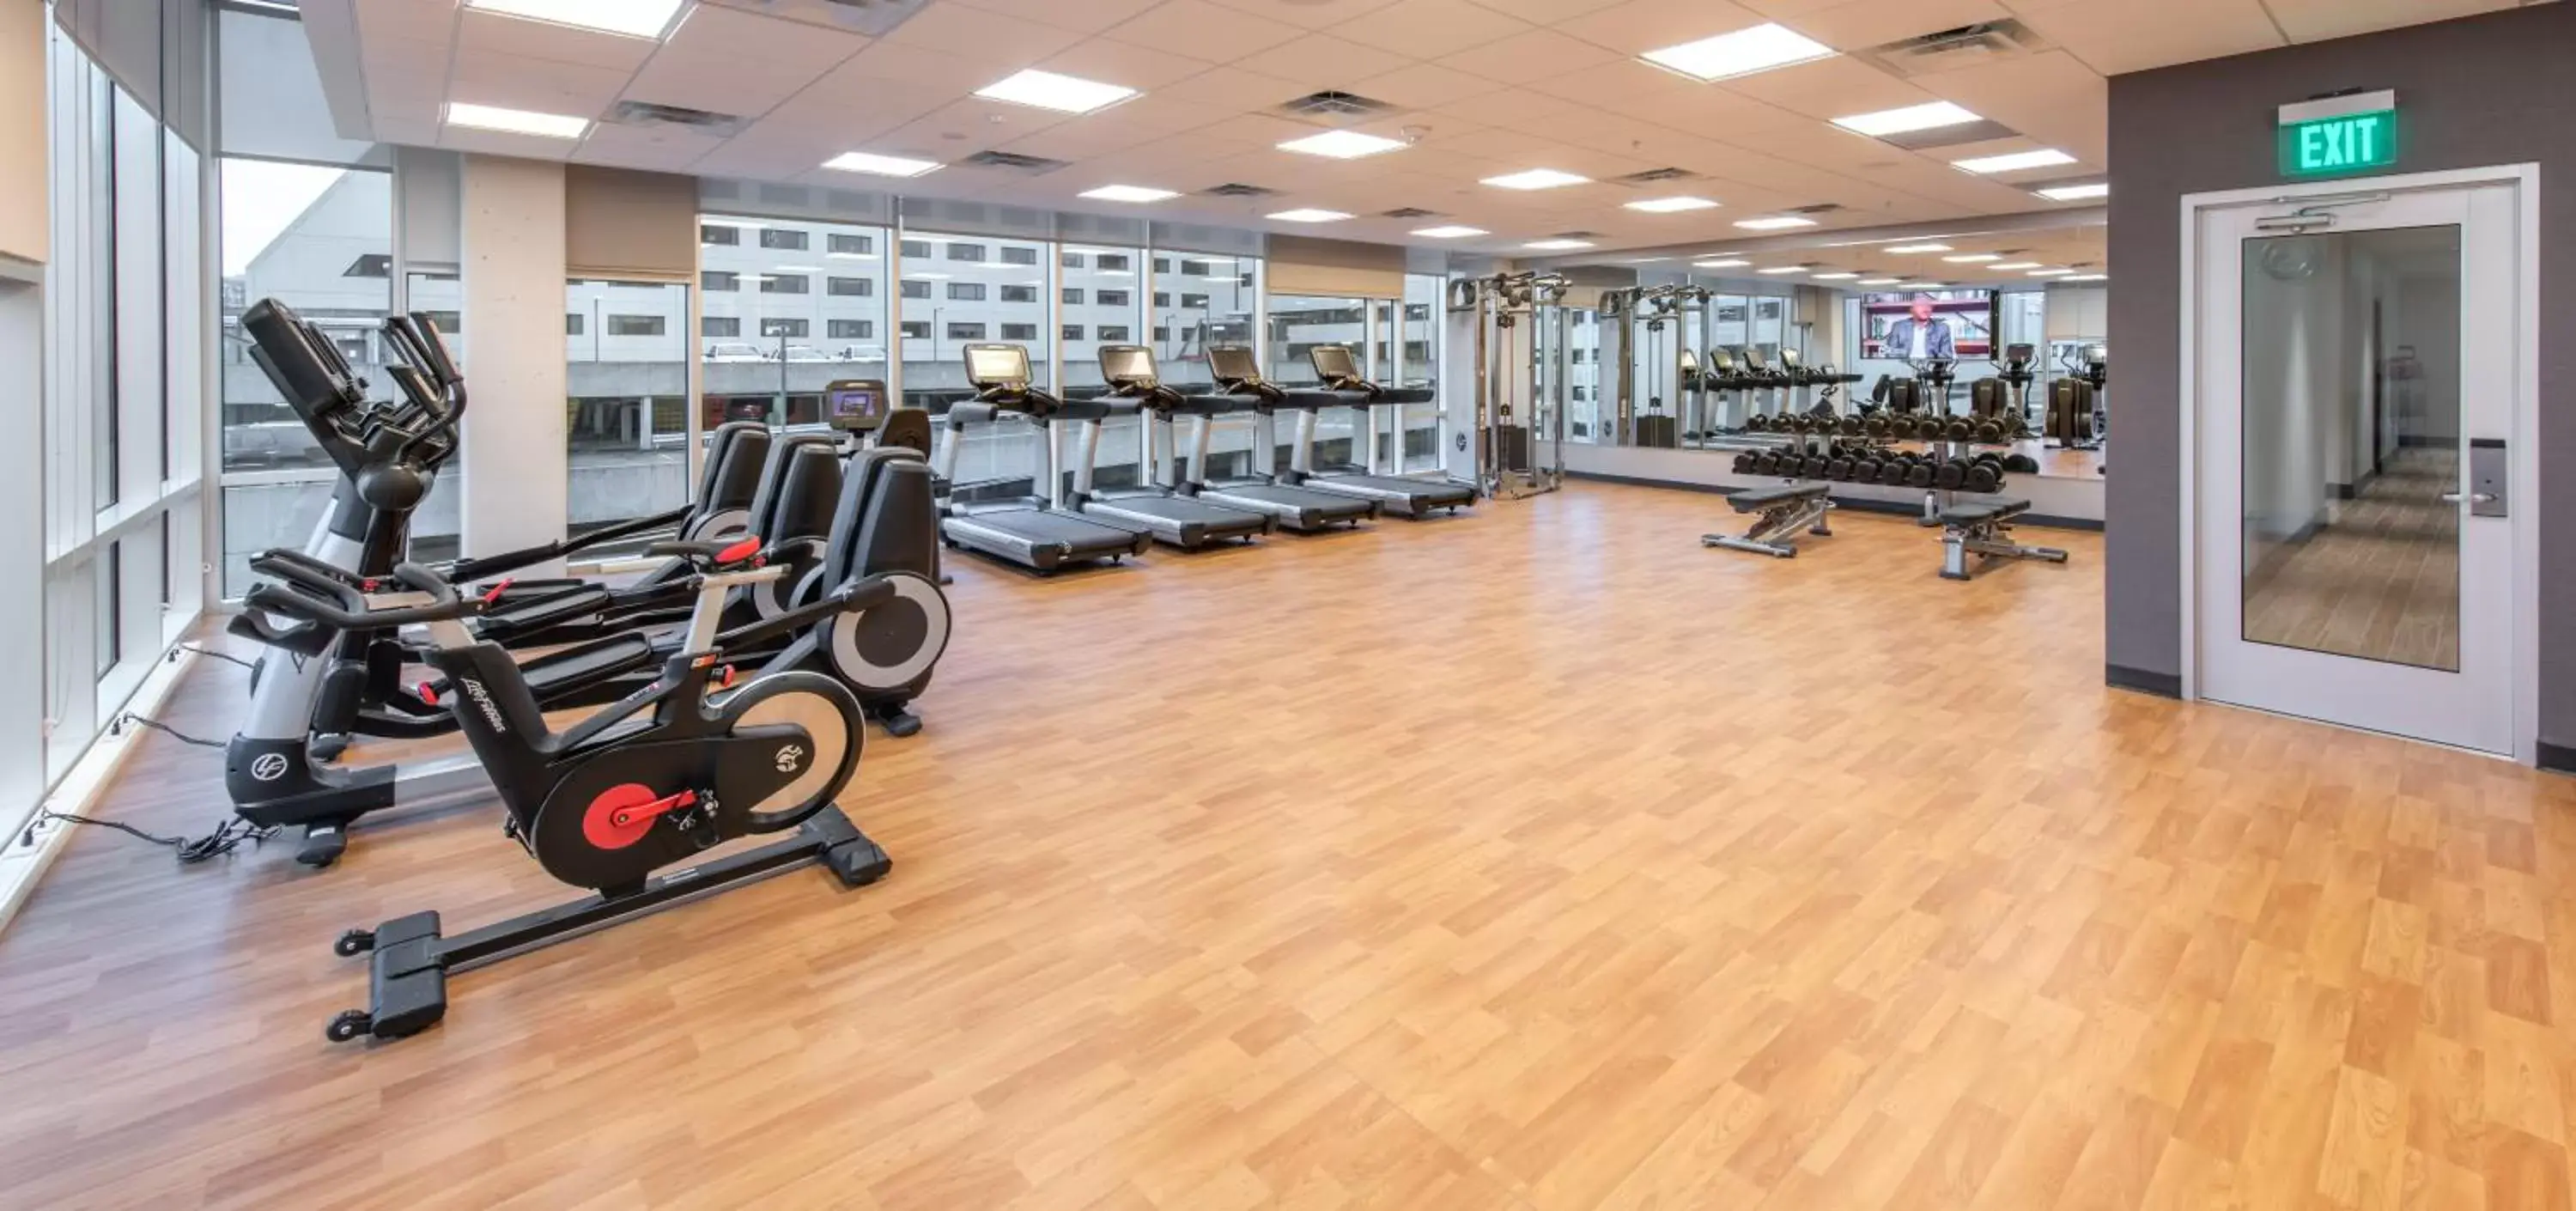 Fitness centre/facilities, Fitness Center/Facilities in Hyatt House Nashville at Vanderbilt